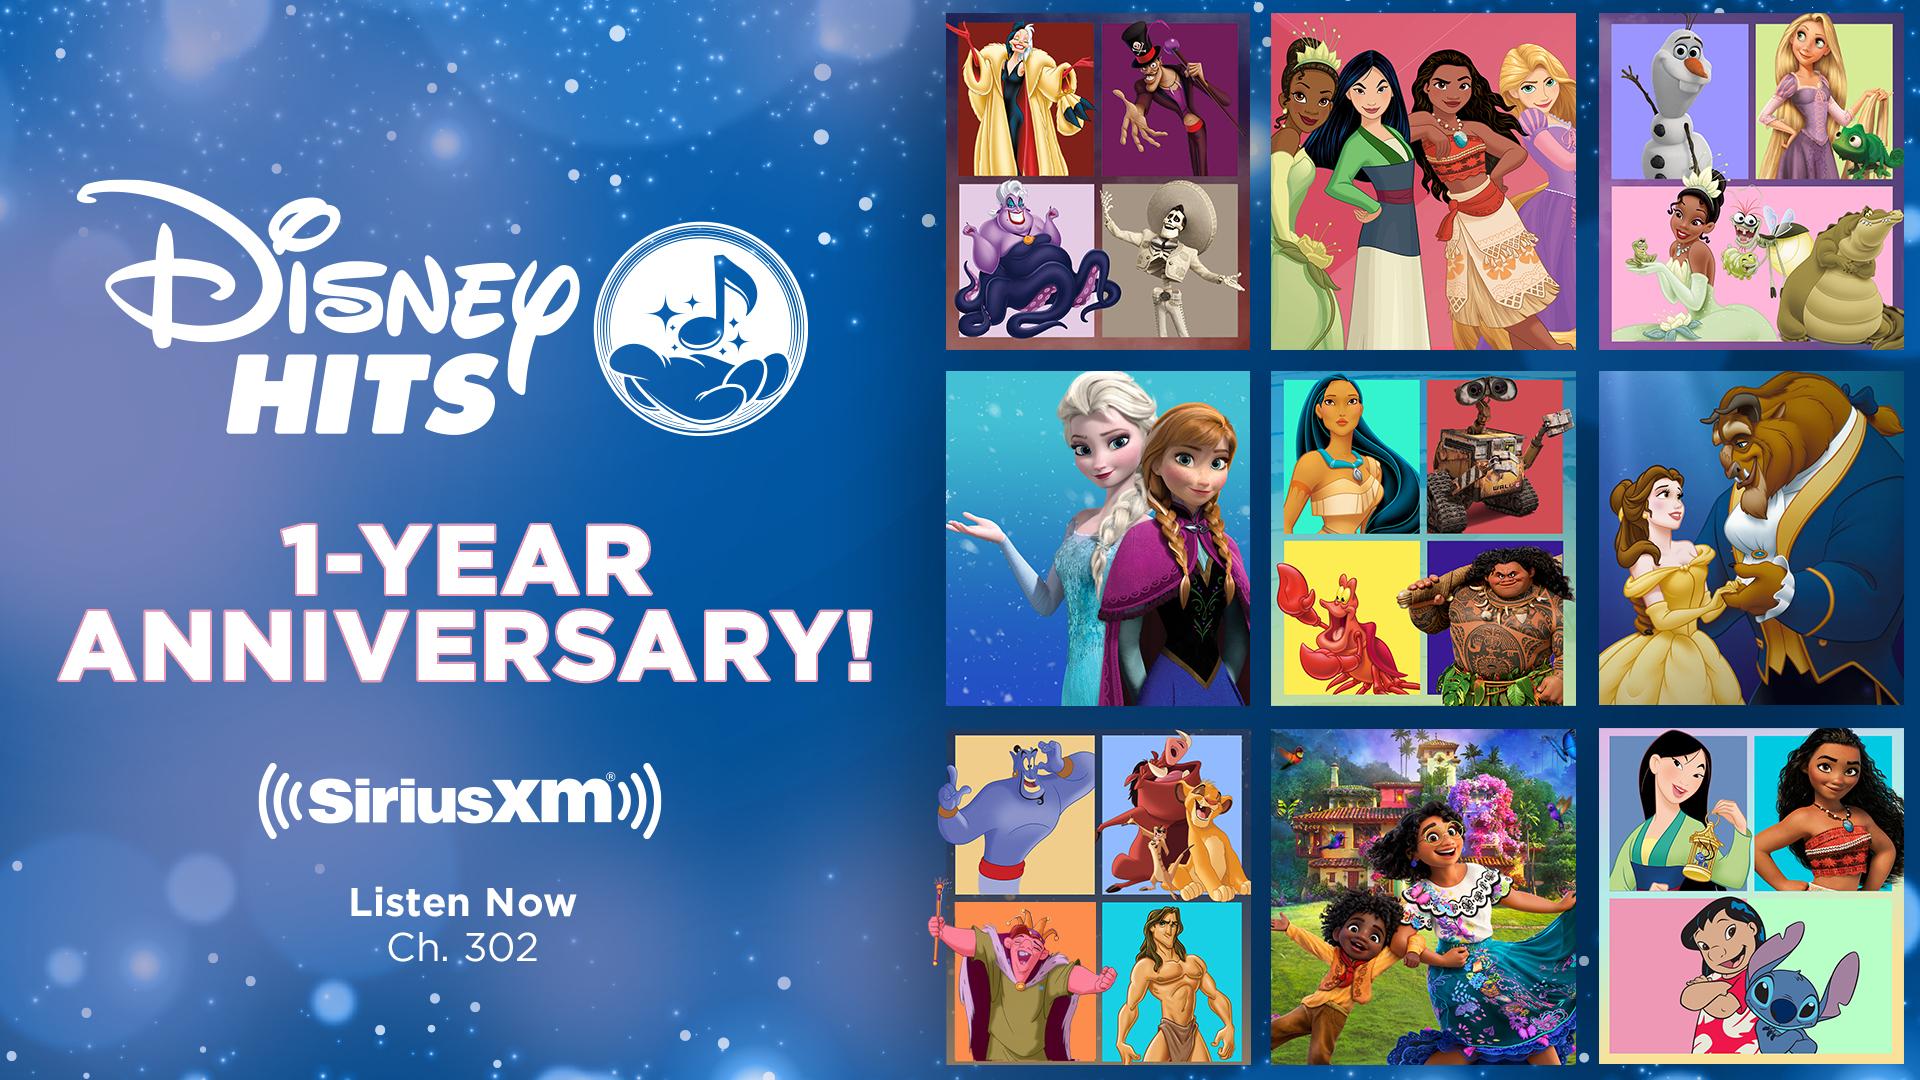 Disney Hist 1 Year Anniversary on SiriusXM Listen Now Channel 302